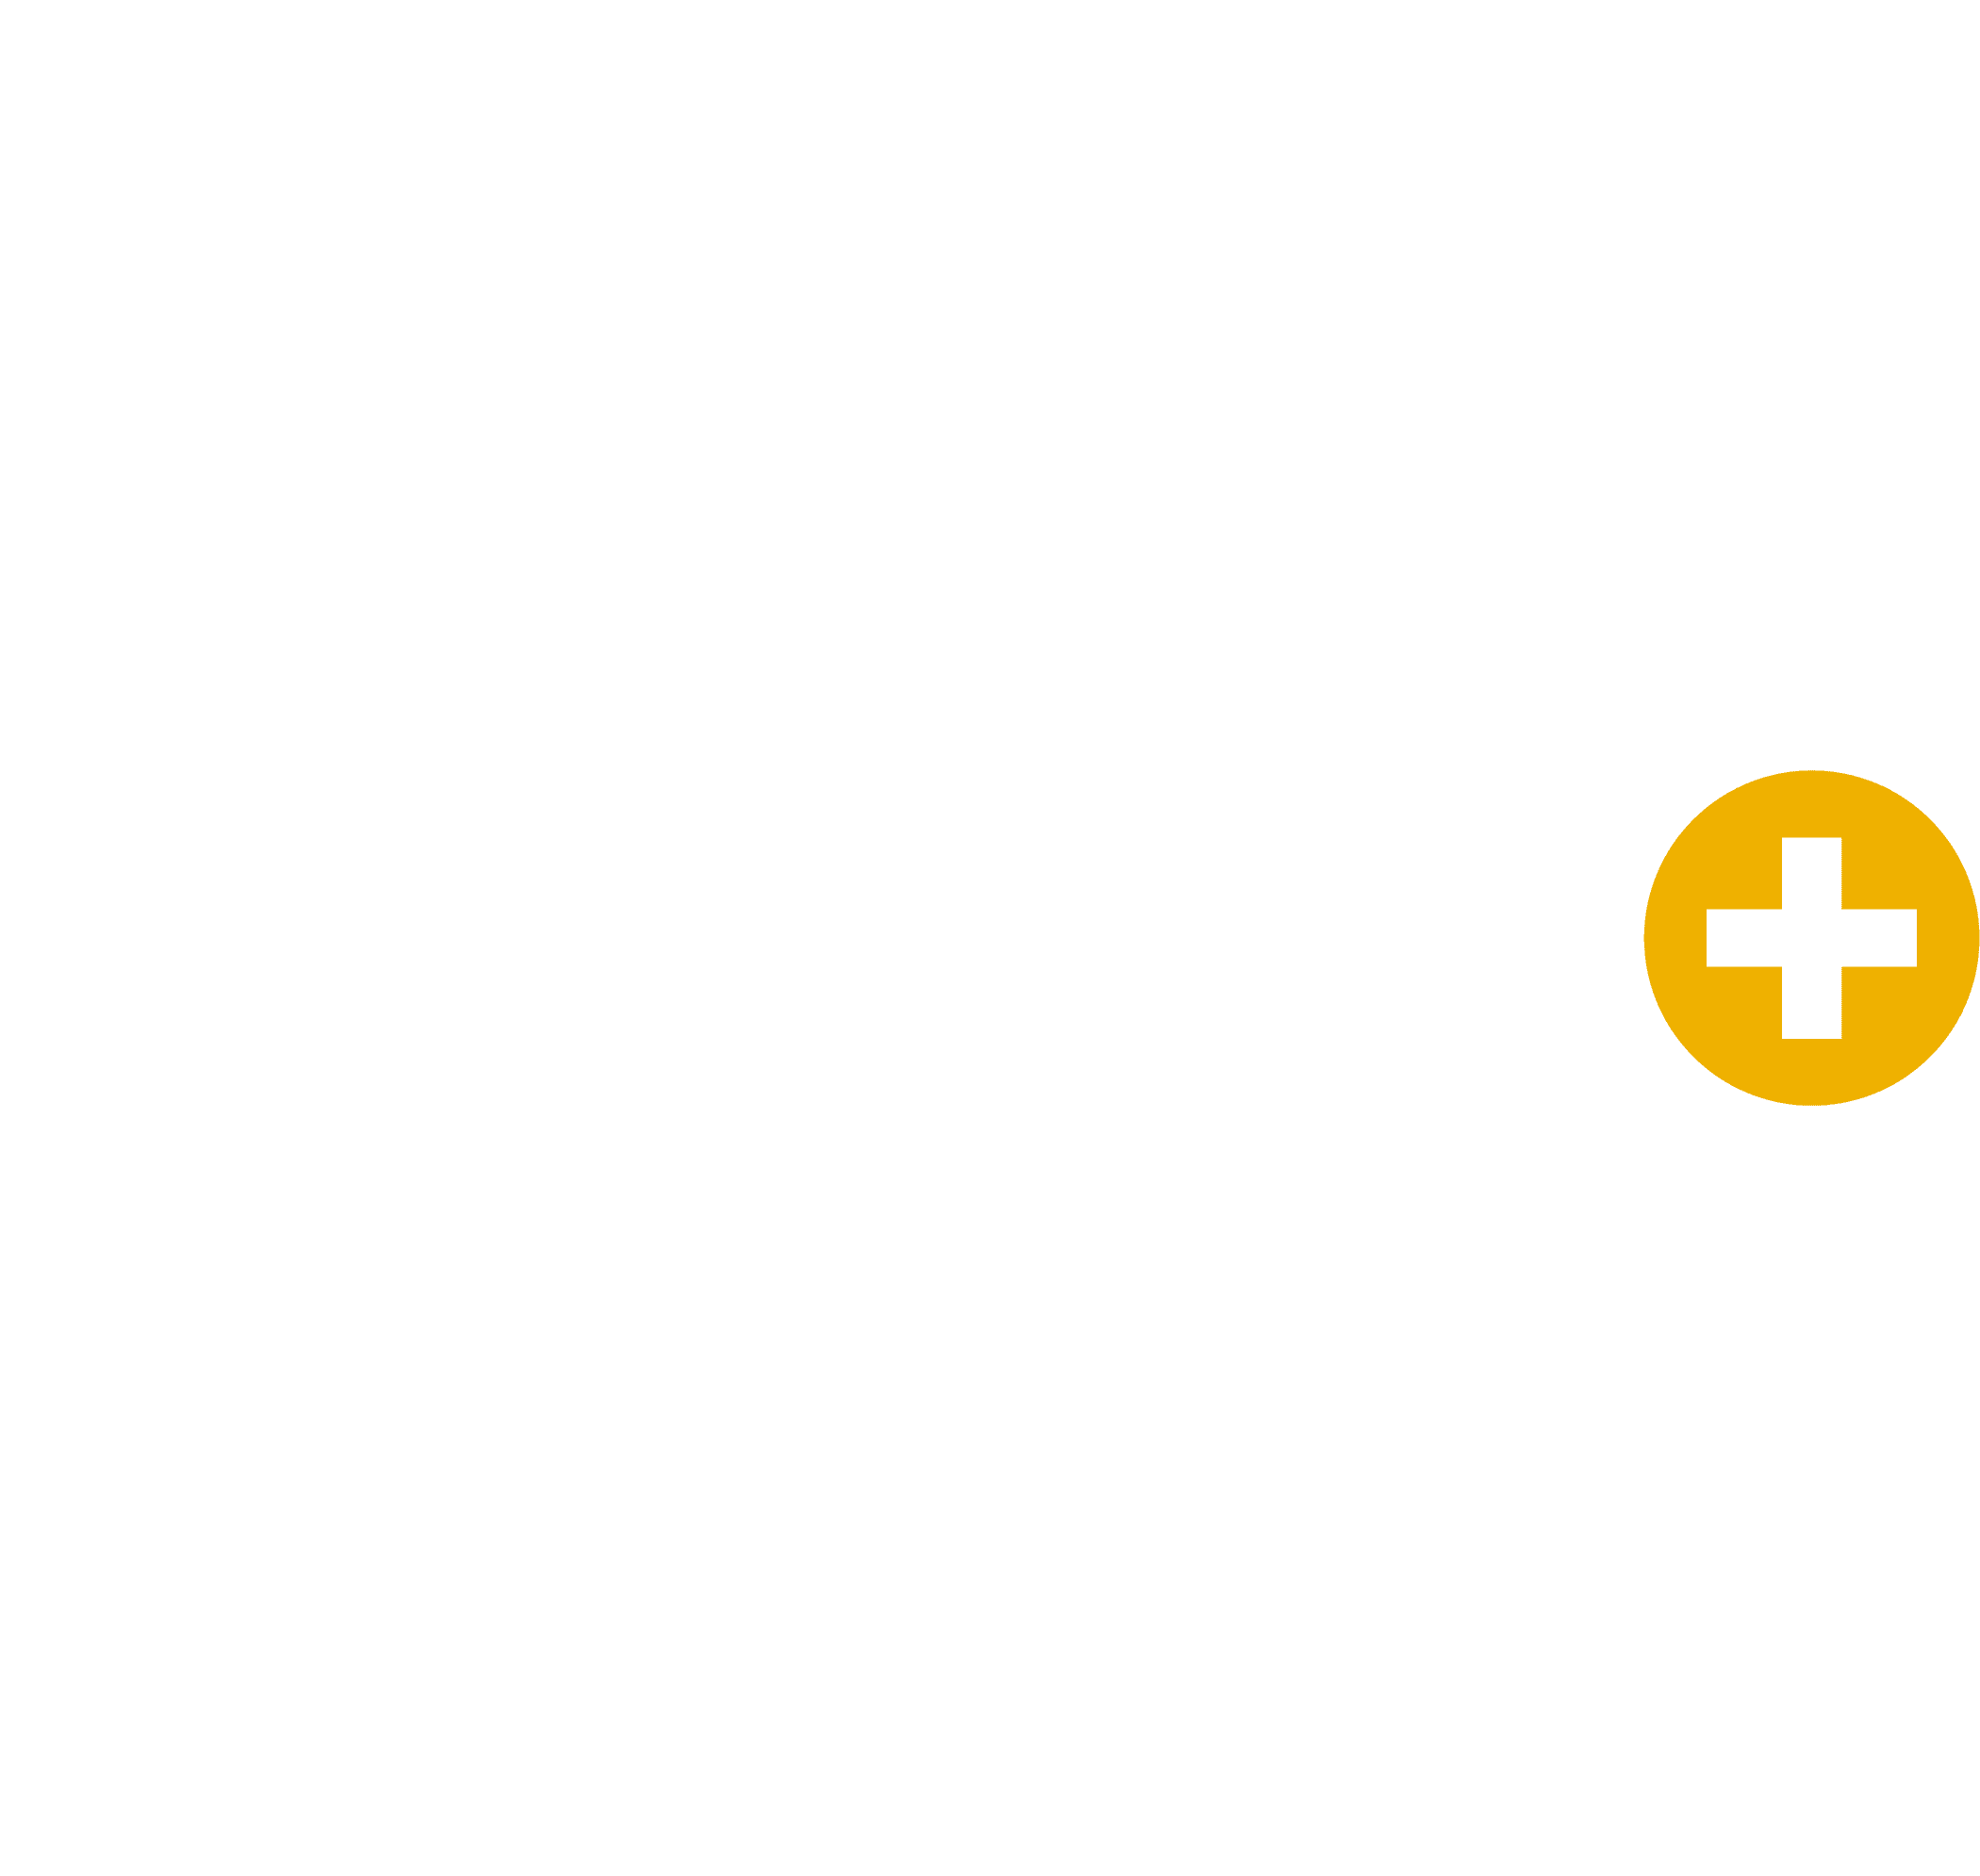 360PR+